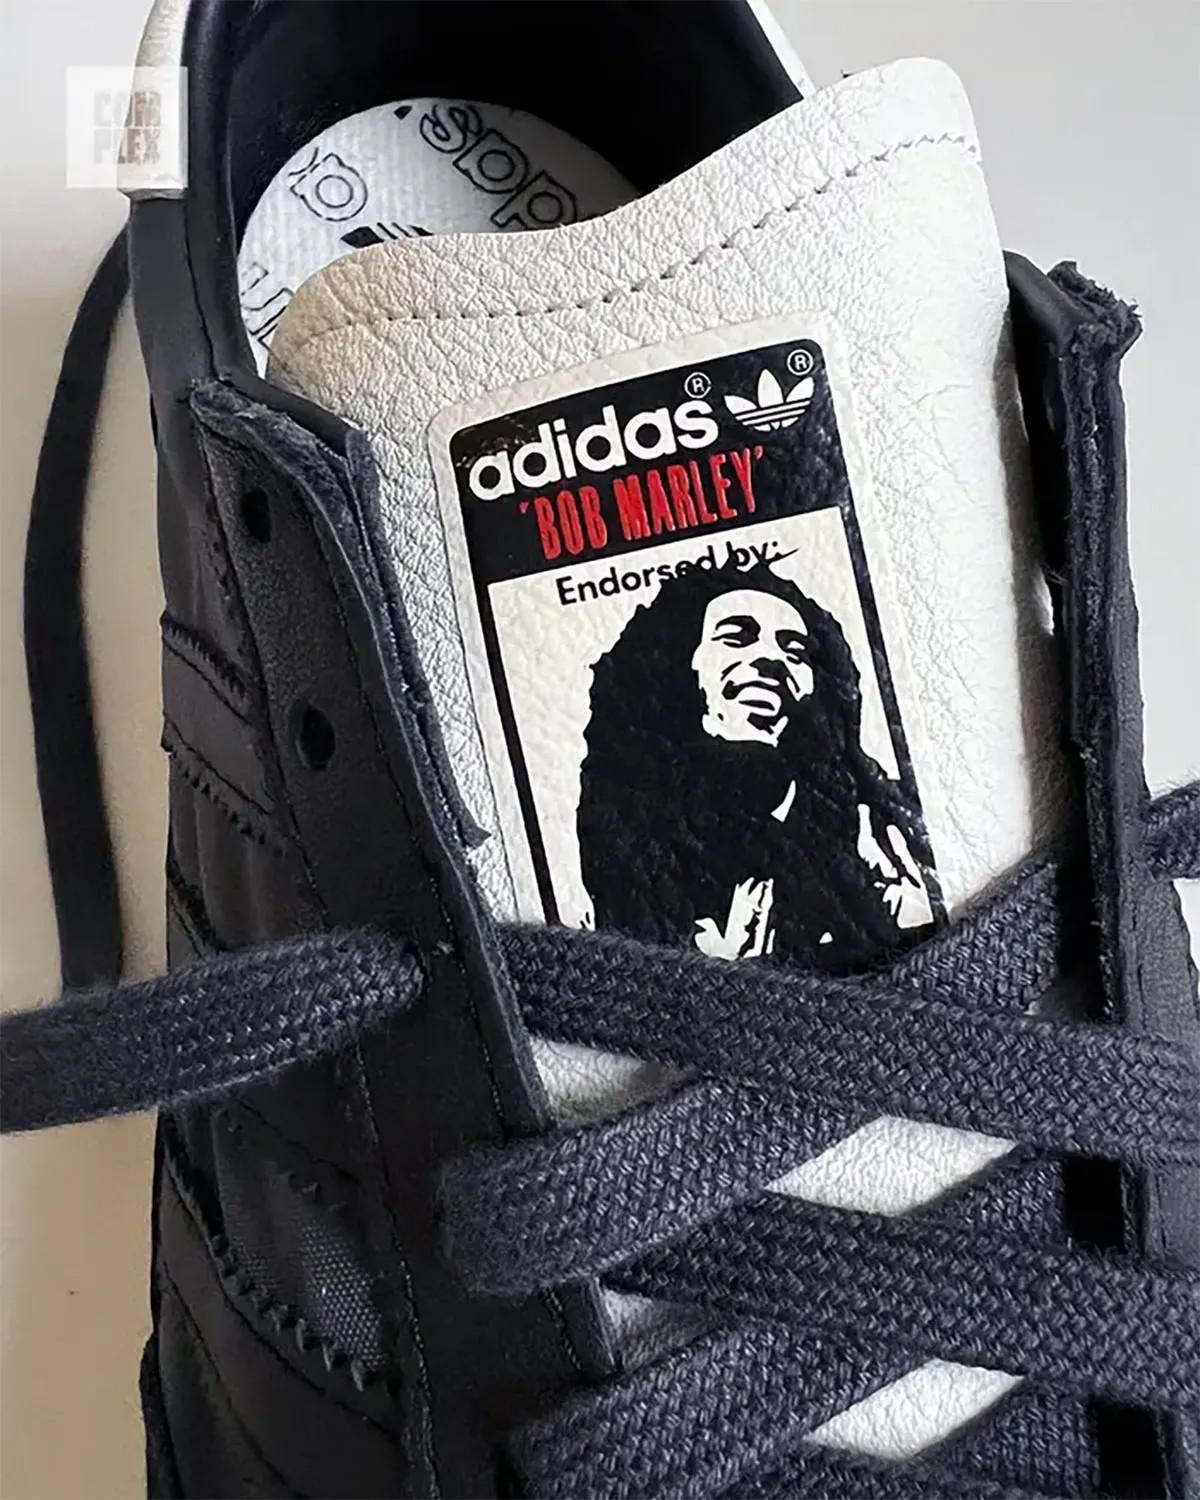 Bob Marley et adidas vont sortir une collaboration SL72 cet été